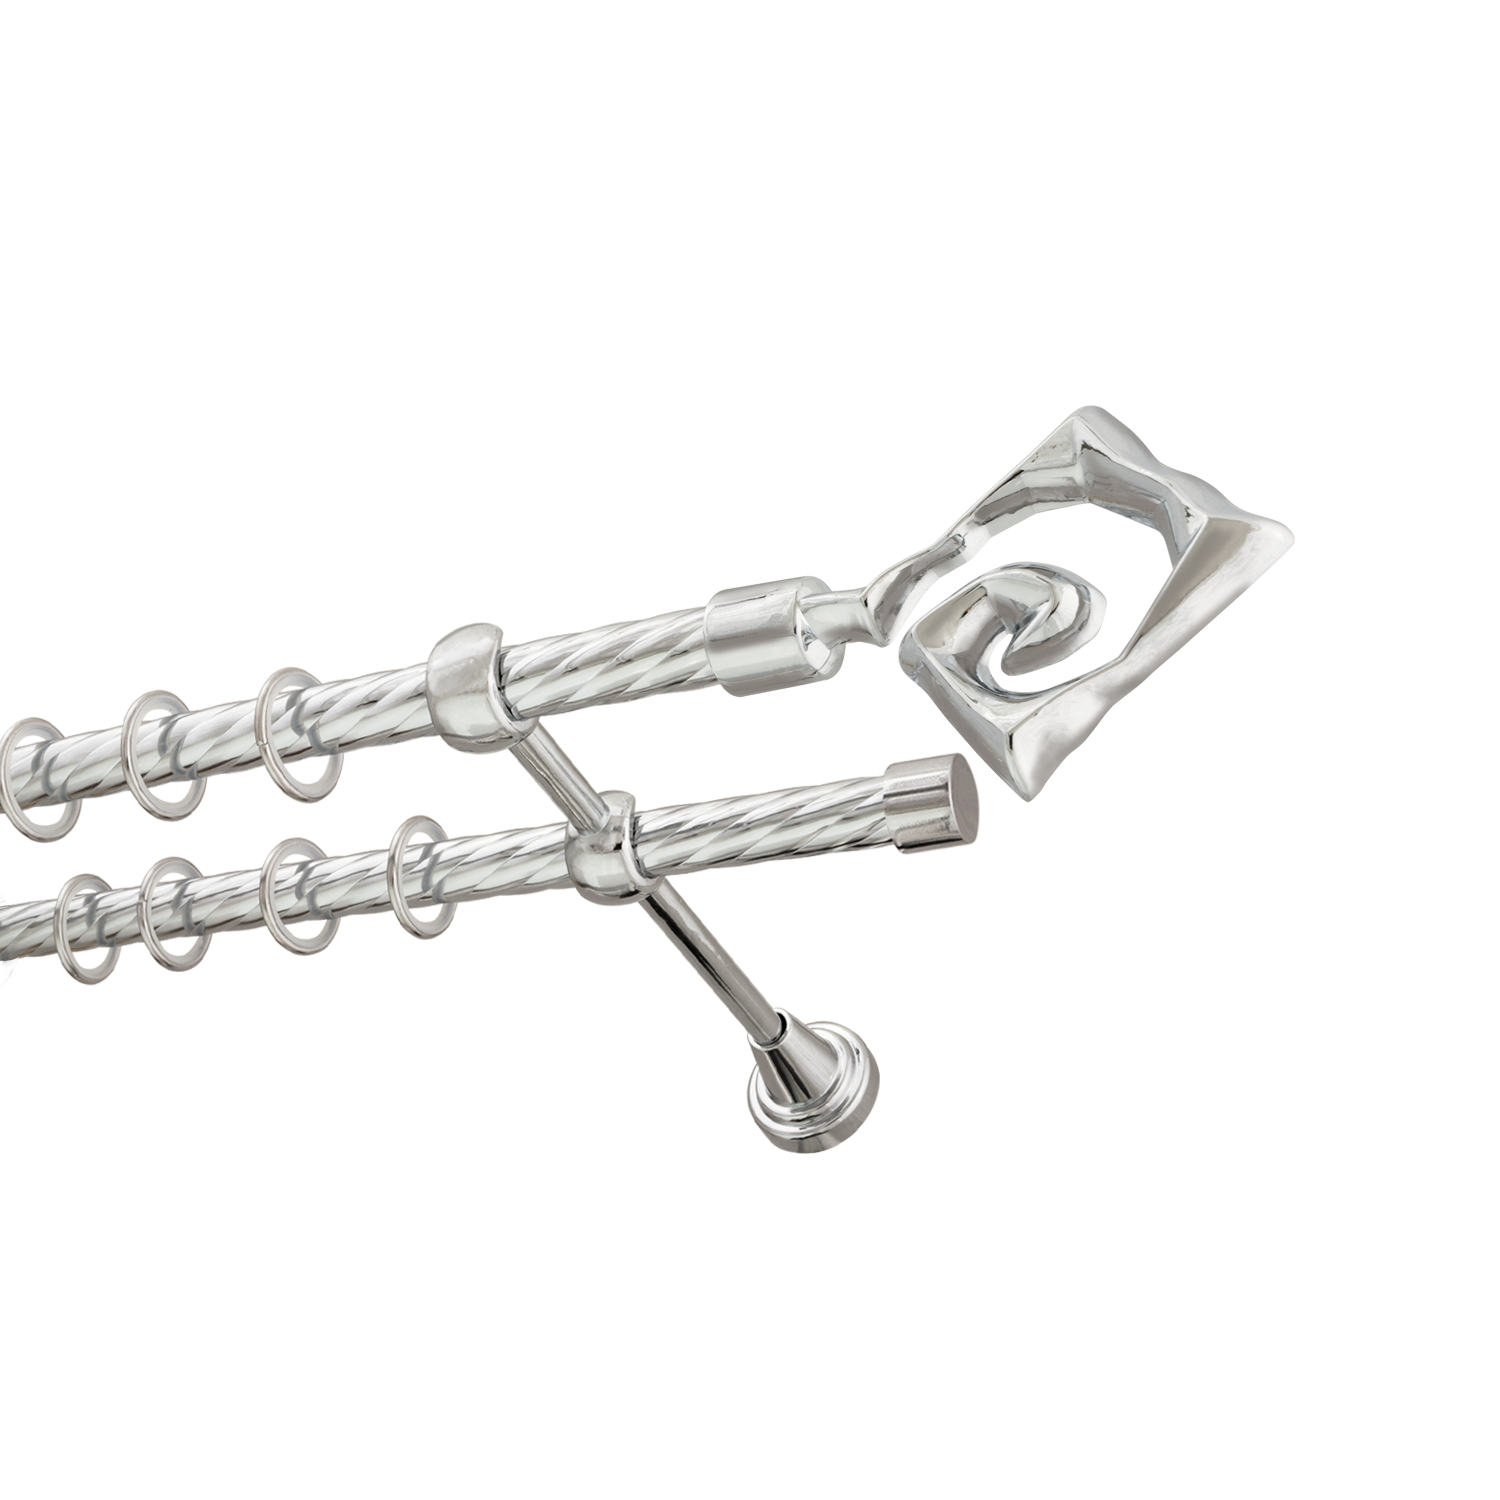 Металлический карниз для штор Крокус, двухрядный 16/16 мм, серебро, витая штанга, длина 300 см - фото Wikidecor.ru